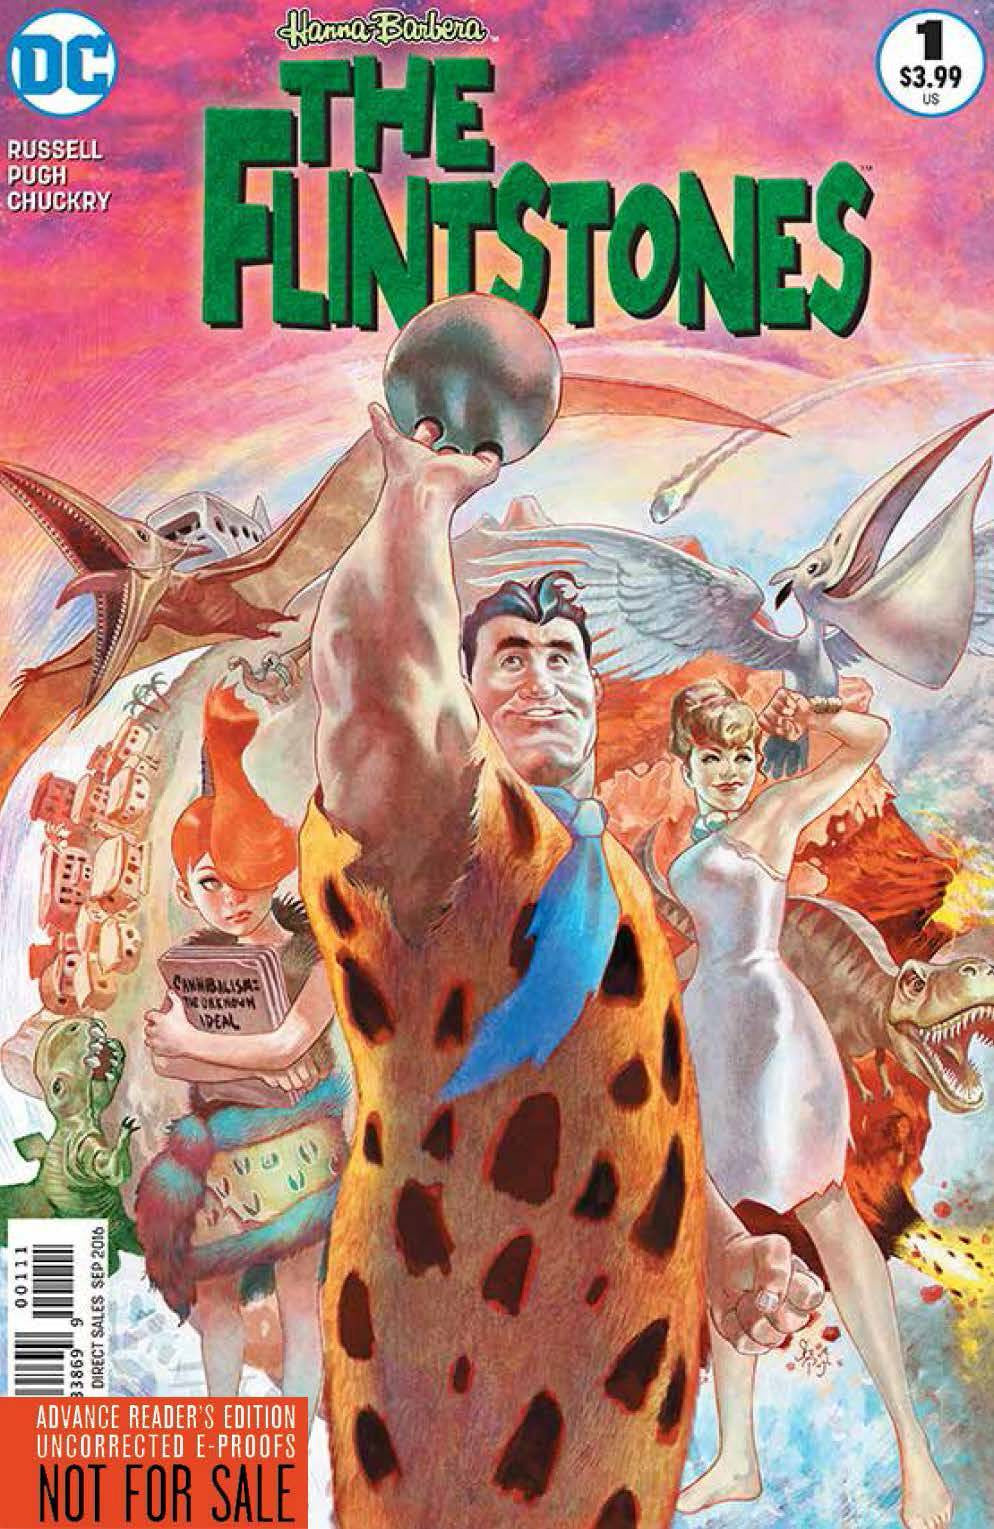 FLINTSTONES #1 COVER